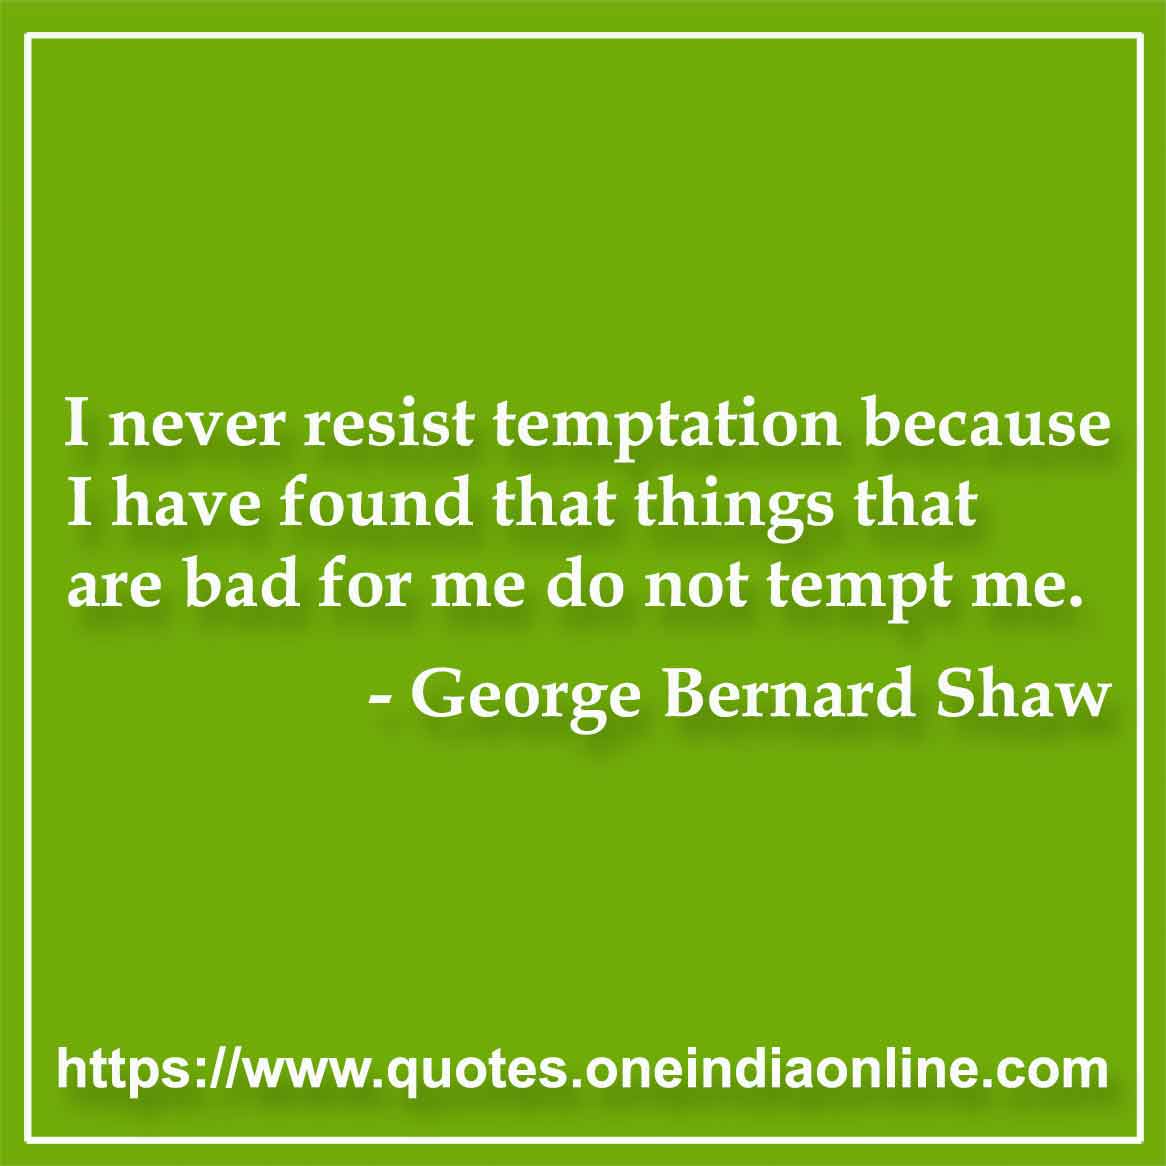 famous temptation quotes